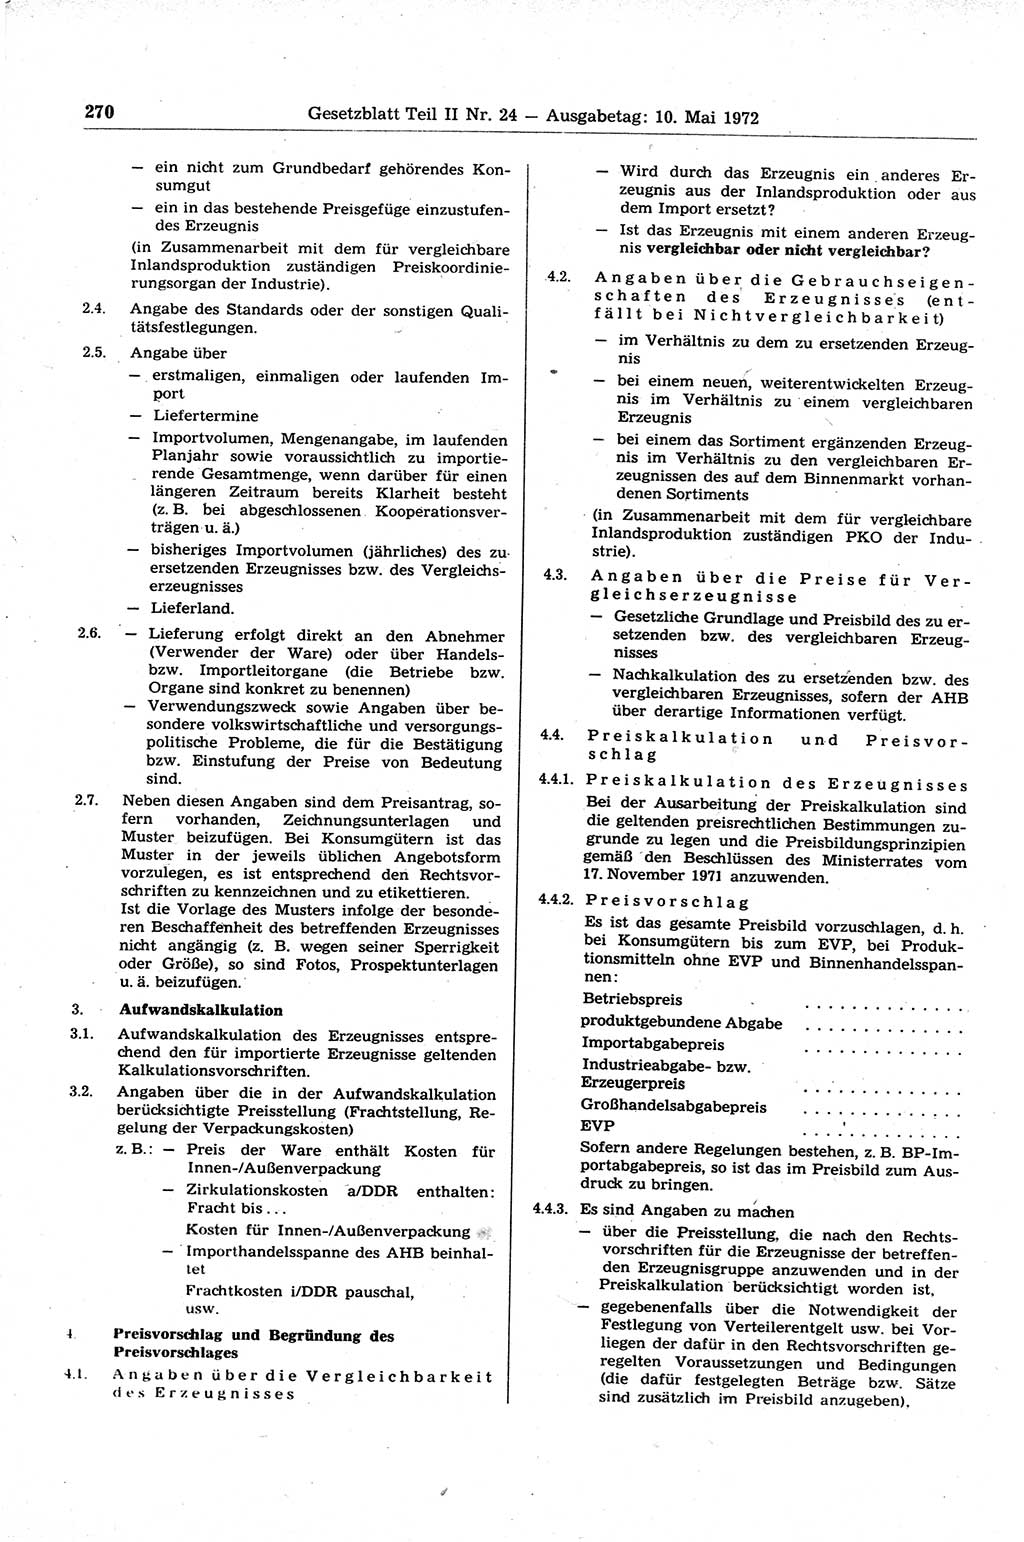 Gesetzblatt (GBl.) der Deutschen Demokratischen Republik (DDR) Teil ⅠⅠ 1972, Seite 270 (GBl. DDR ⅠⅠ 1972, S. 270)